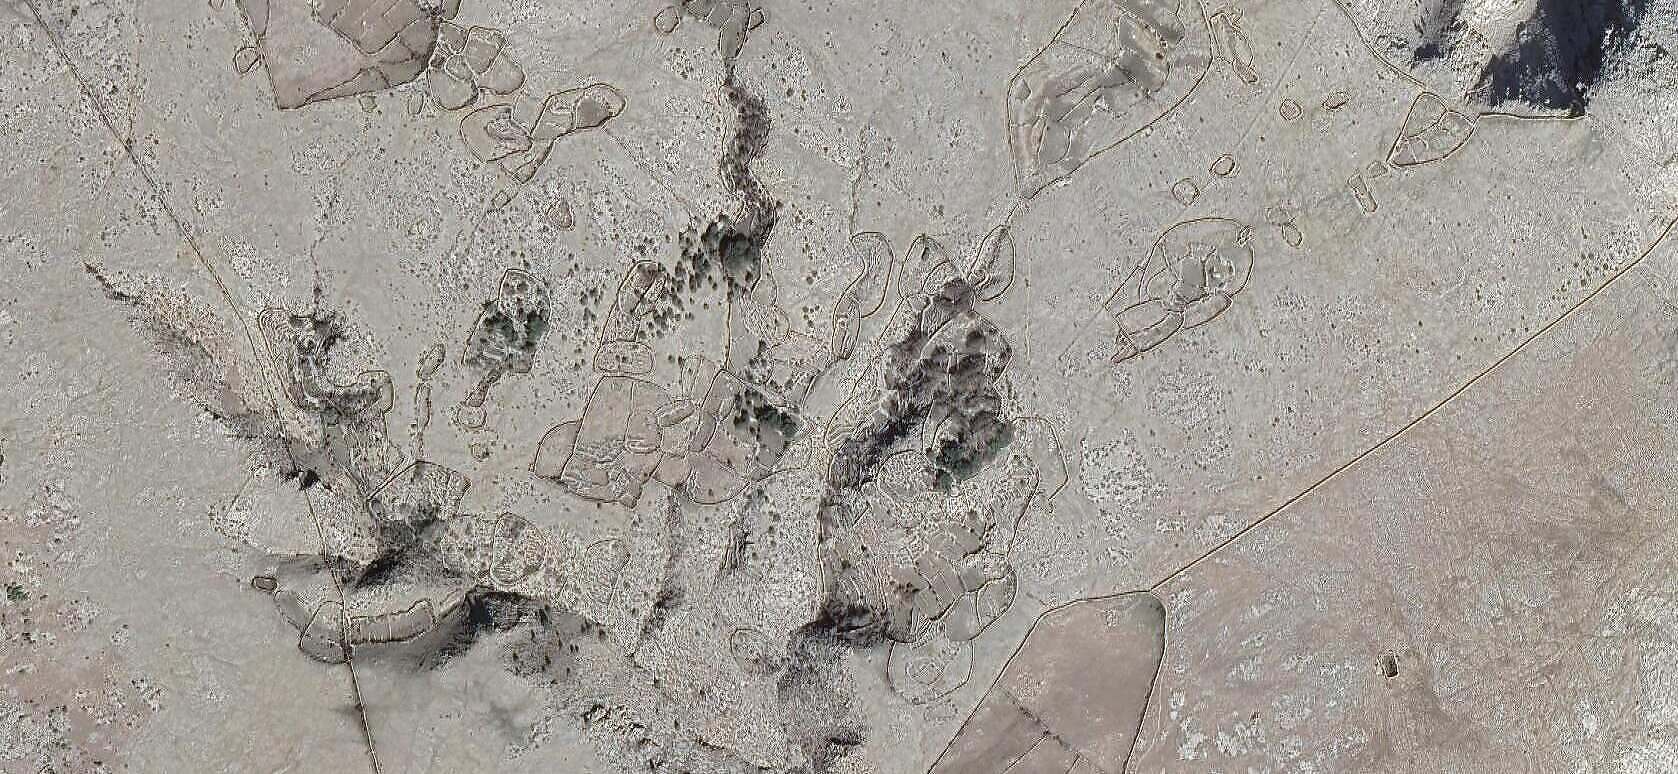 Baški mrgari ili hrvatski Nazca lines